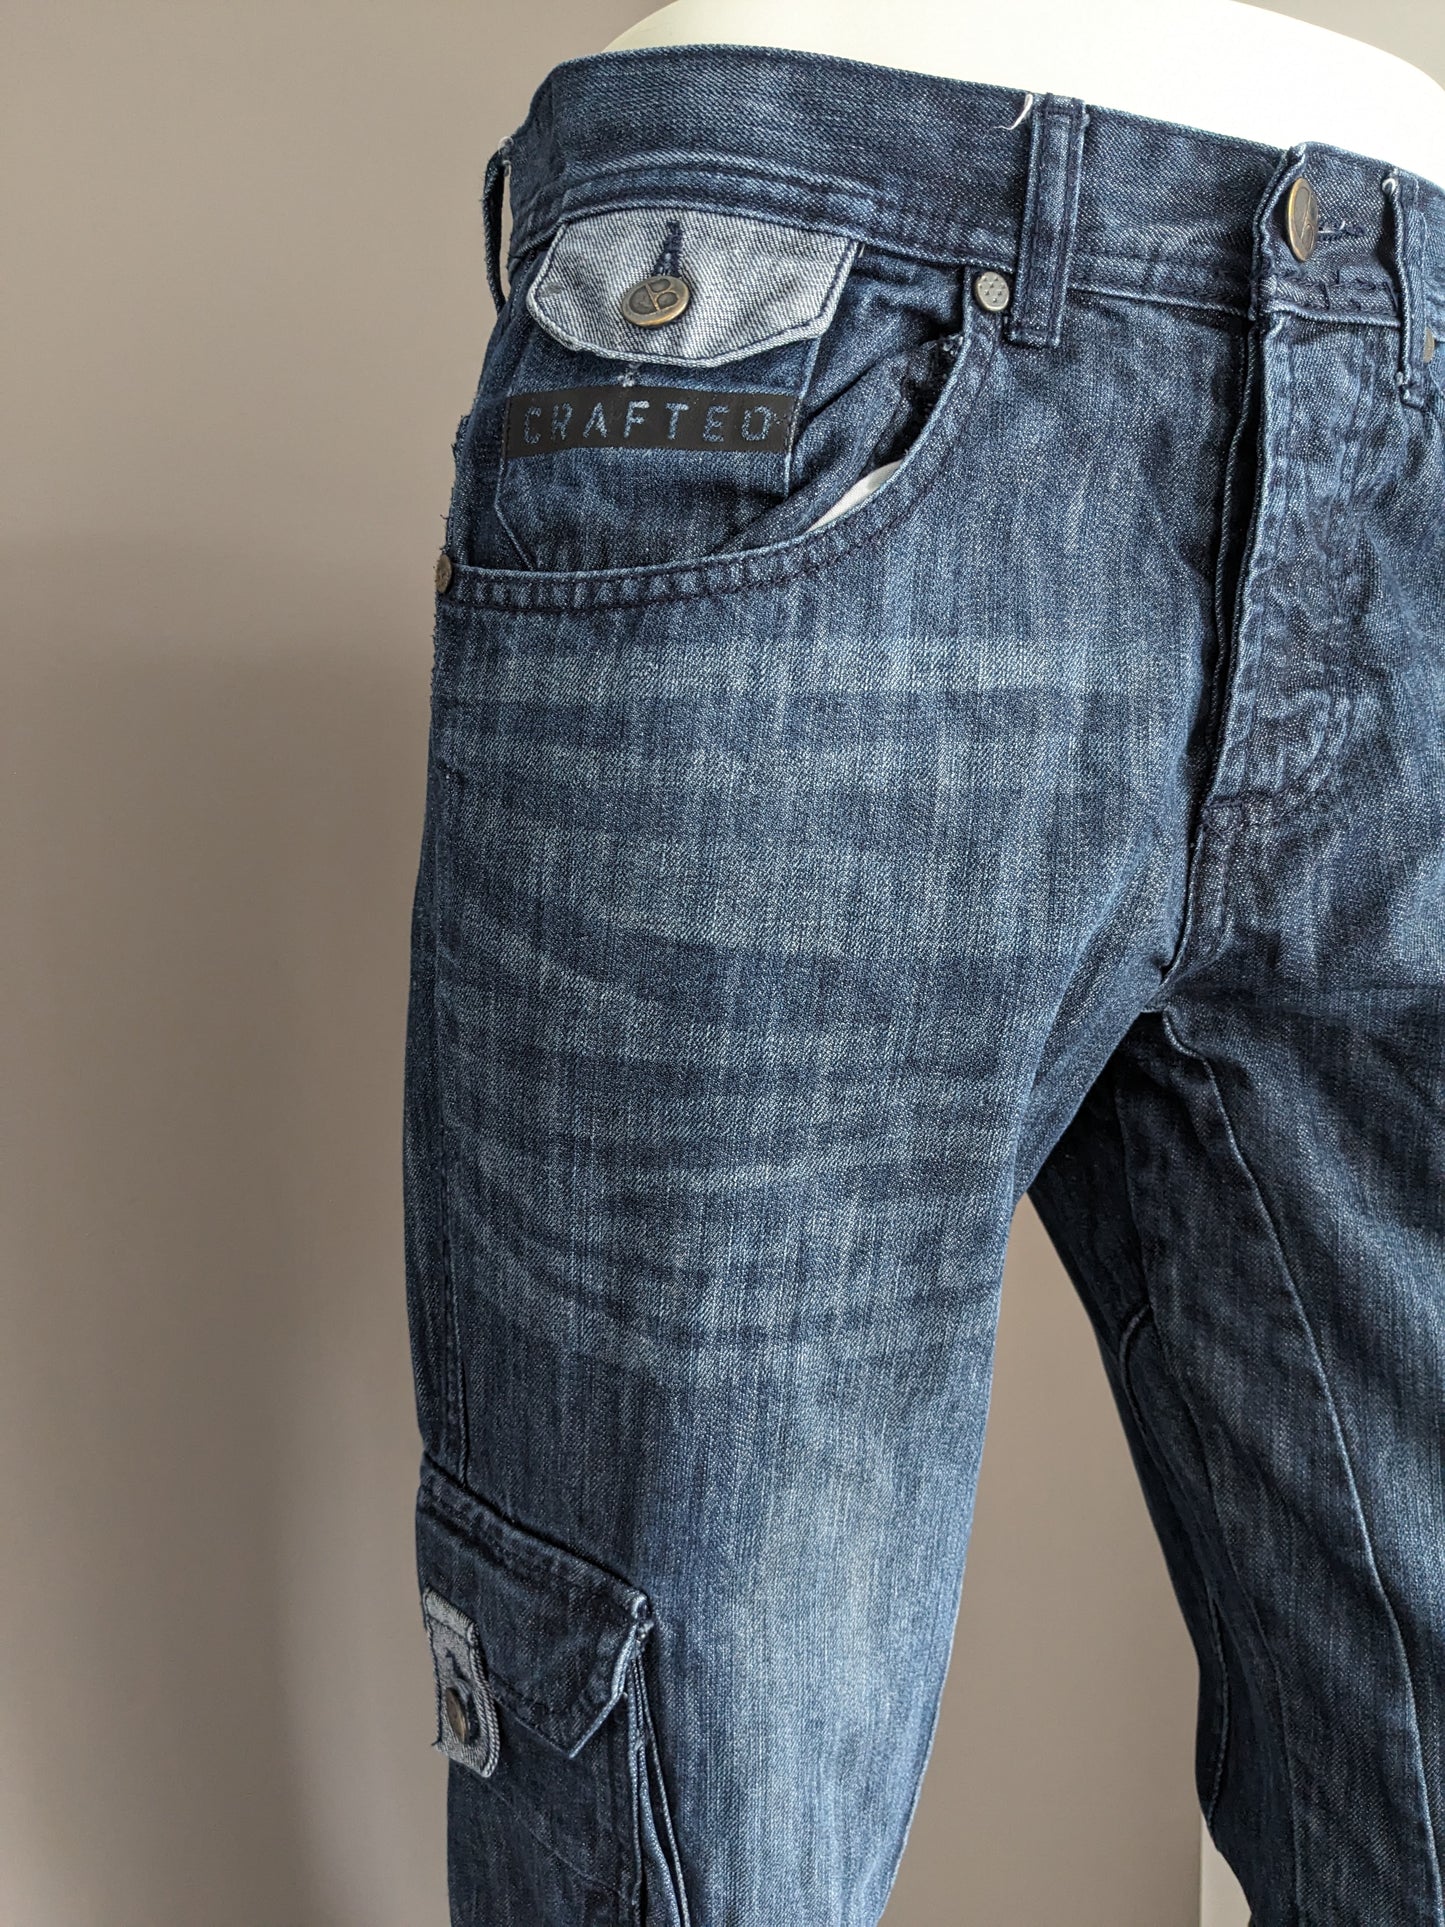 Gearbeitete Jeans. Dunkelblau gefärbt. Größe W32 - L34.